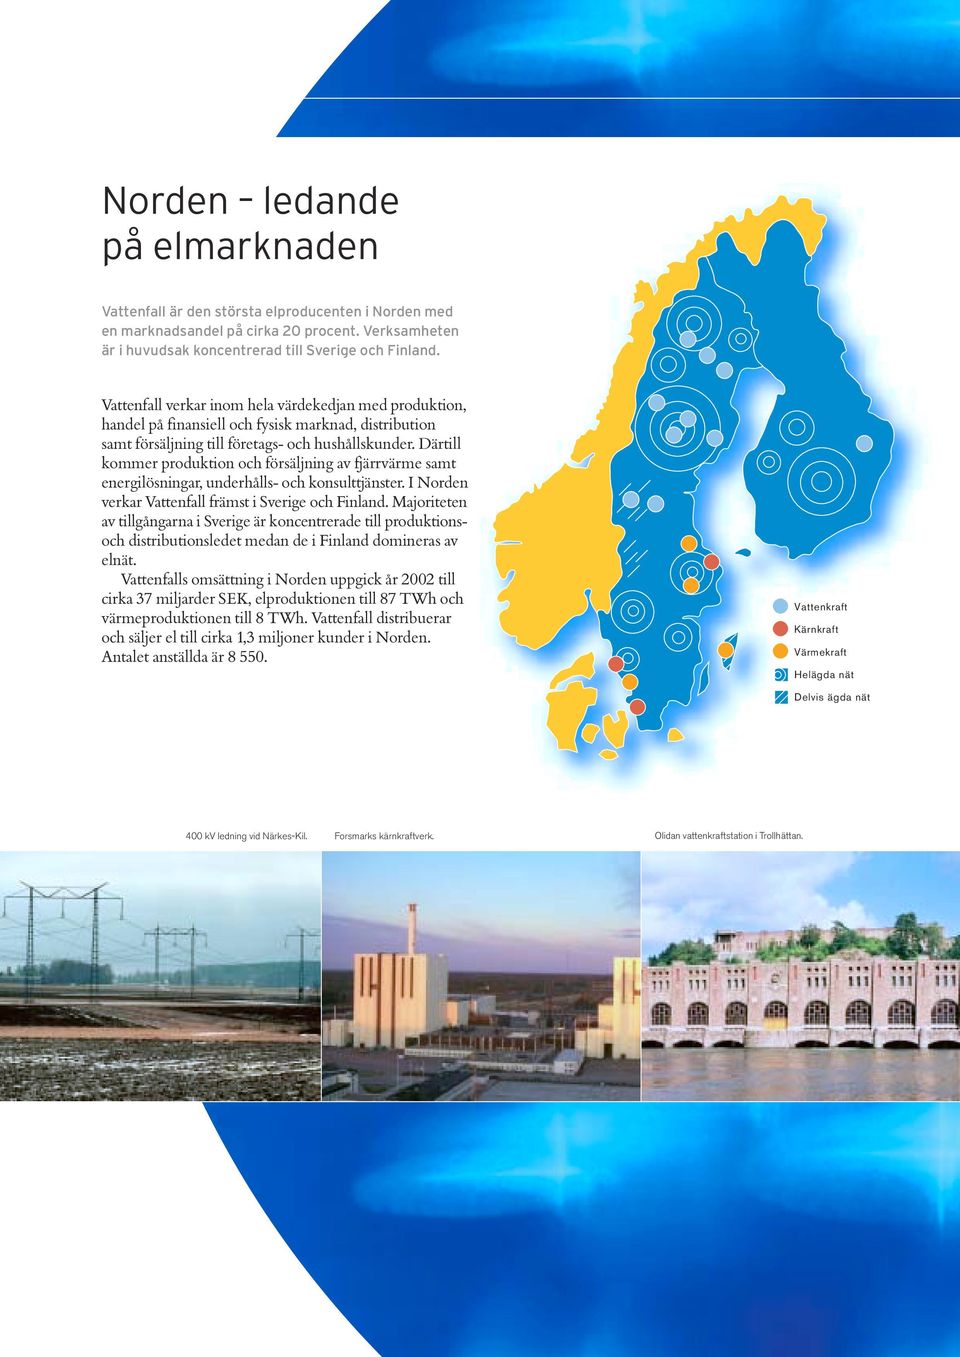 Därtill kommer produktion och försäljning av fjärrvärme samt energilösningar, underhålls- och konsulttjänster. I Norden verkar Vattenfall främst i Sverige och Finland.